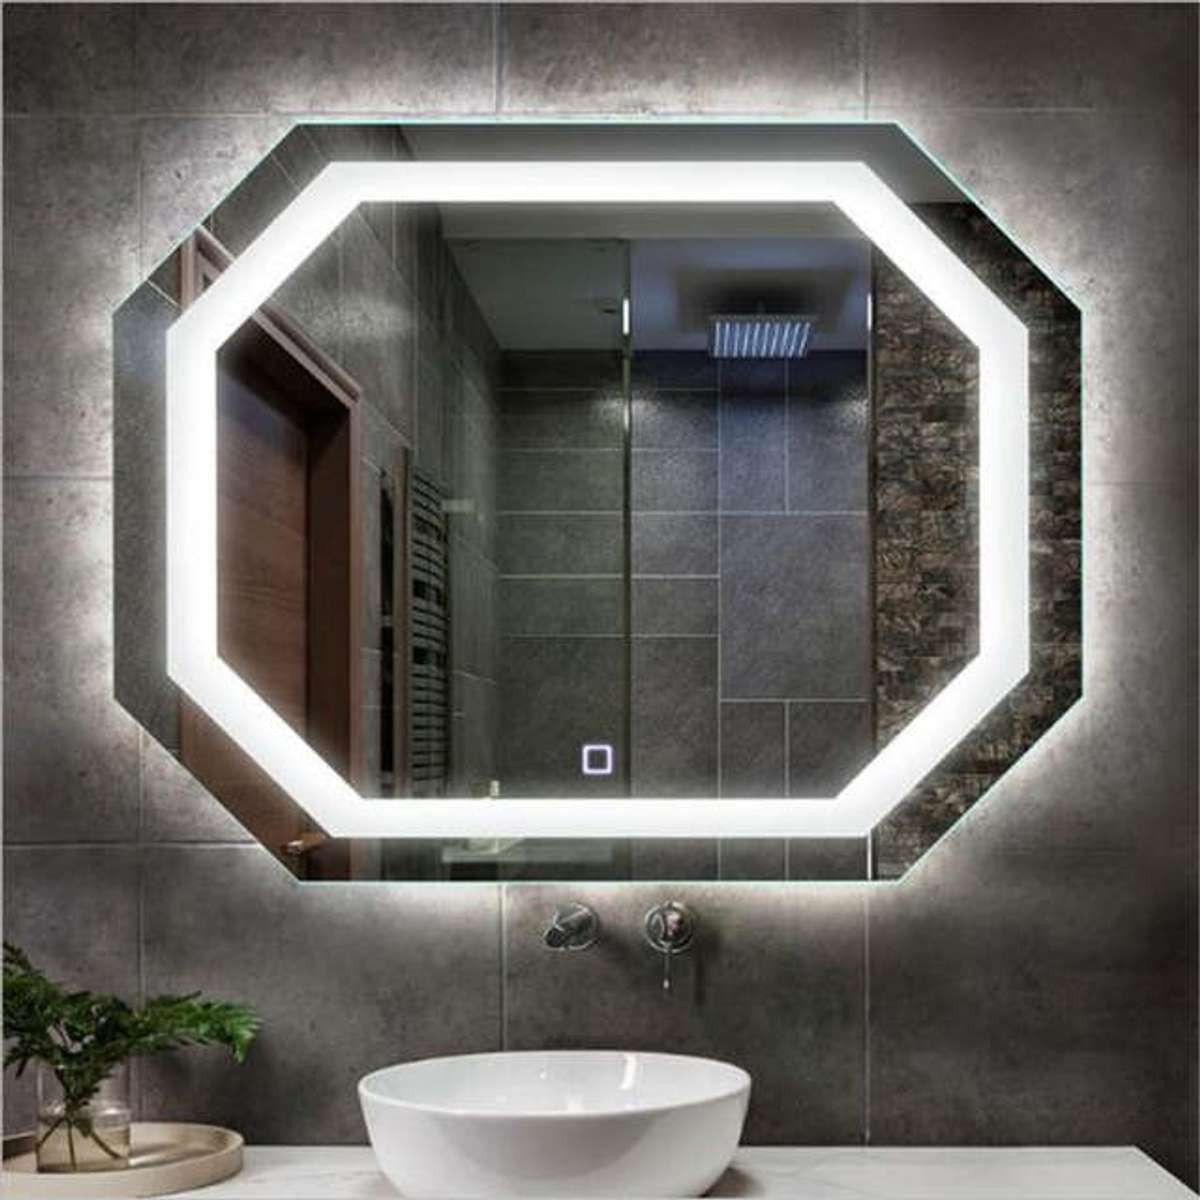 Lighting, Bathroom Designs by Interior Designer Anoop Varghese, Ernakulam | Kolo